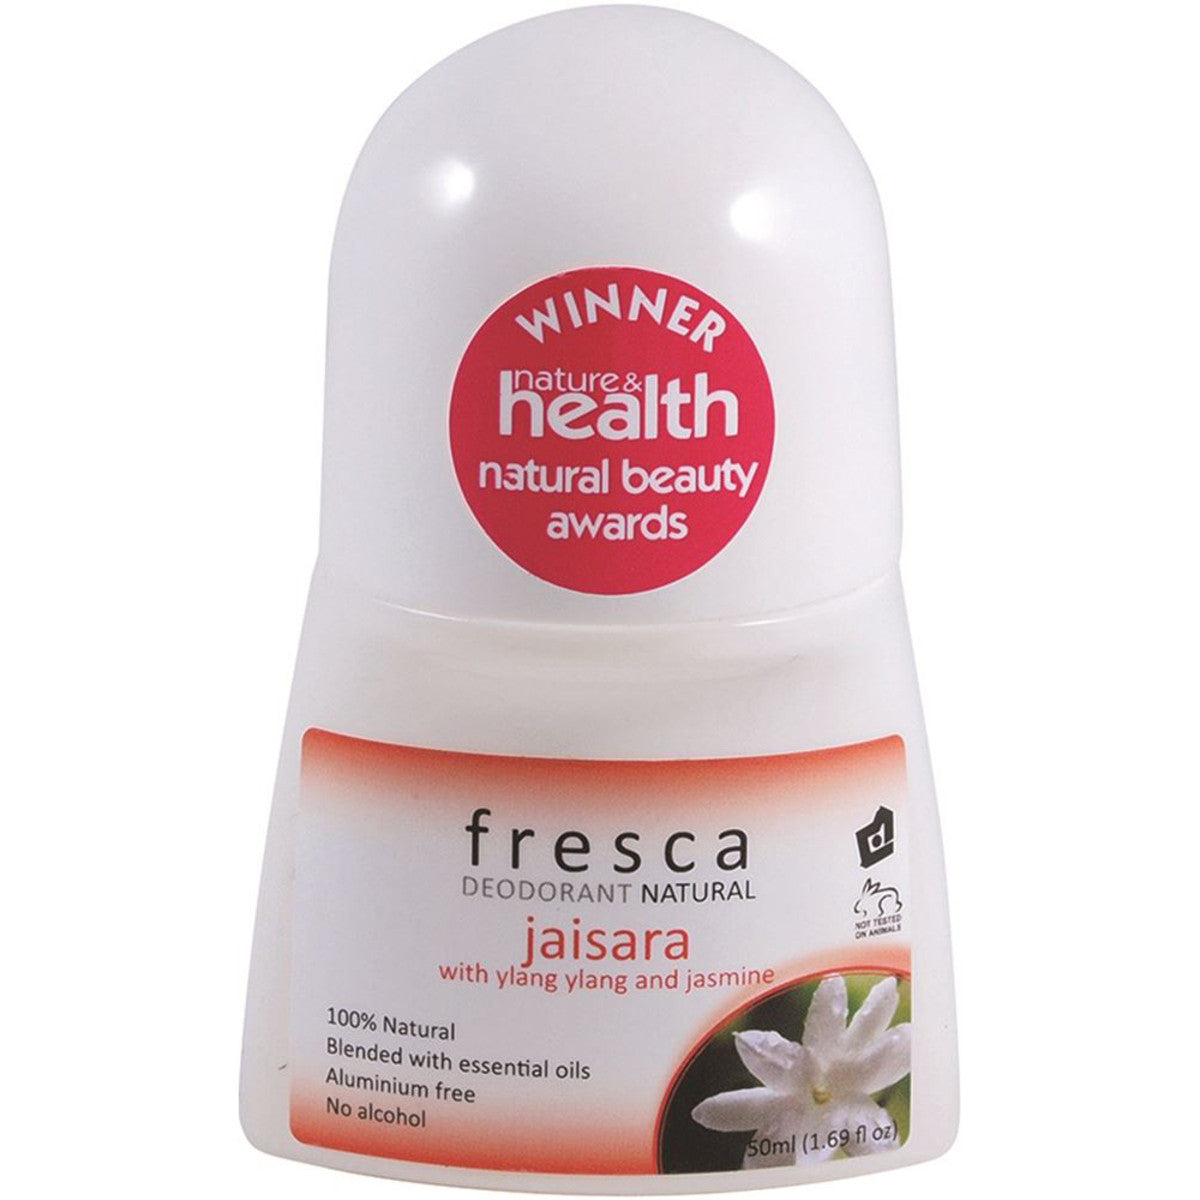 Fresca Natural - Deodorant Jaisara